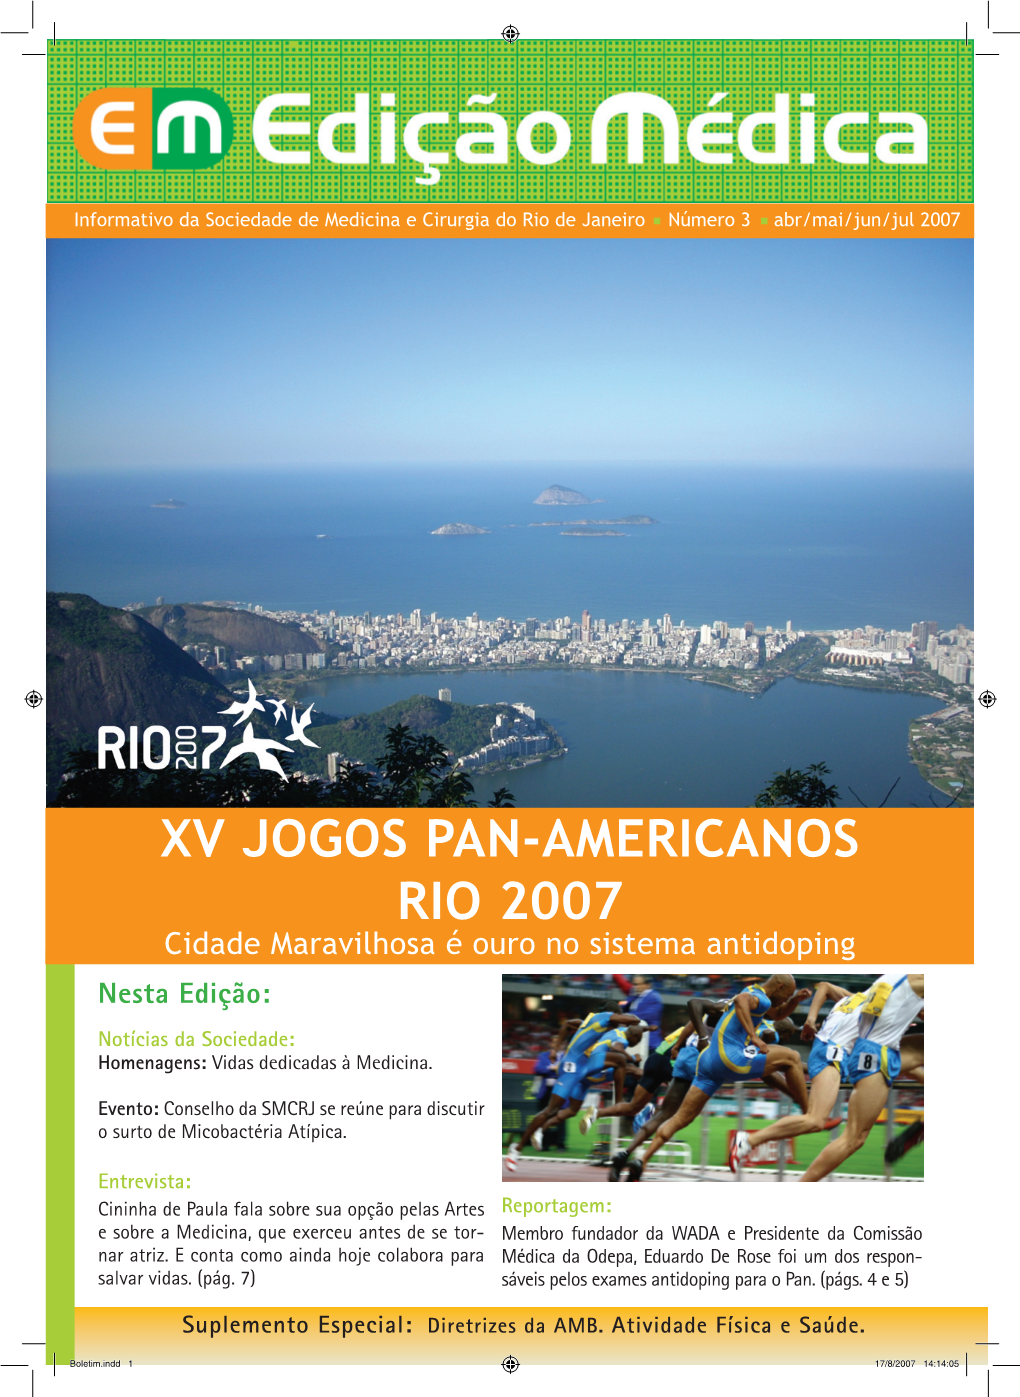 XV JOGOS PAN-AMERICANOS RIO 2007 Cidade Maravilhosa É Ouro No Sistema Antidoping Nesta Edição: Notícias Da Sociedade: Homenagens: Vidas Dedicadas À Medicina